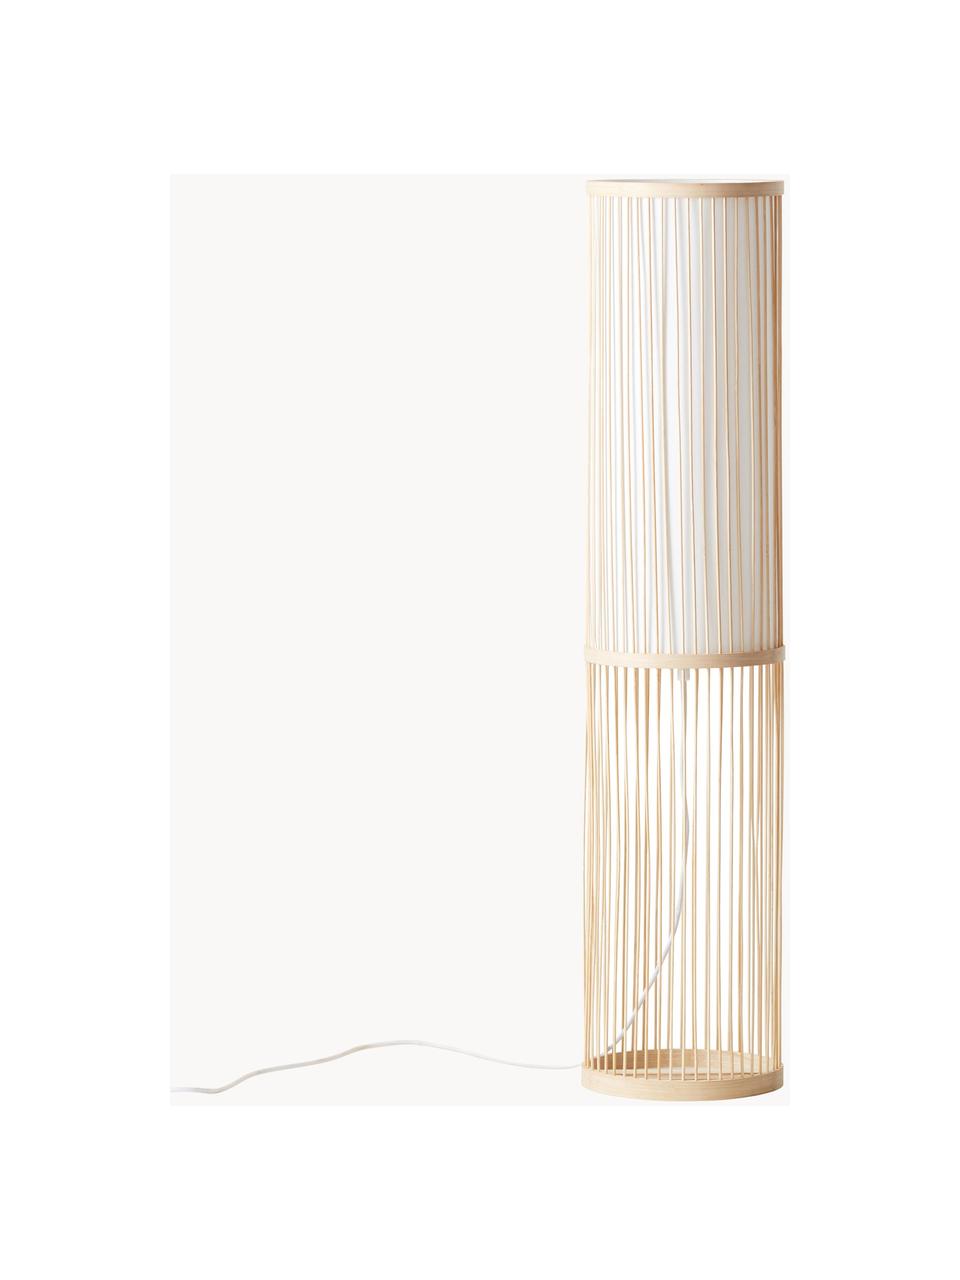 Petite borne d'éclairage en bambou Nori, Beige, haut. 91 cm